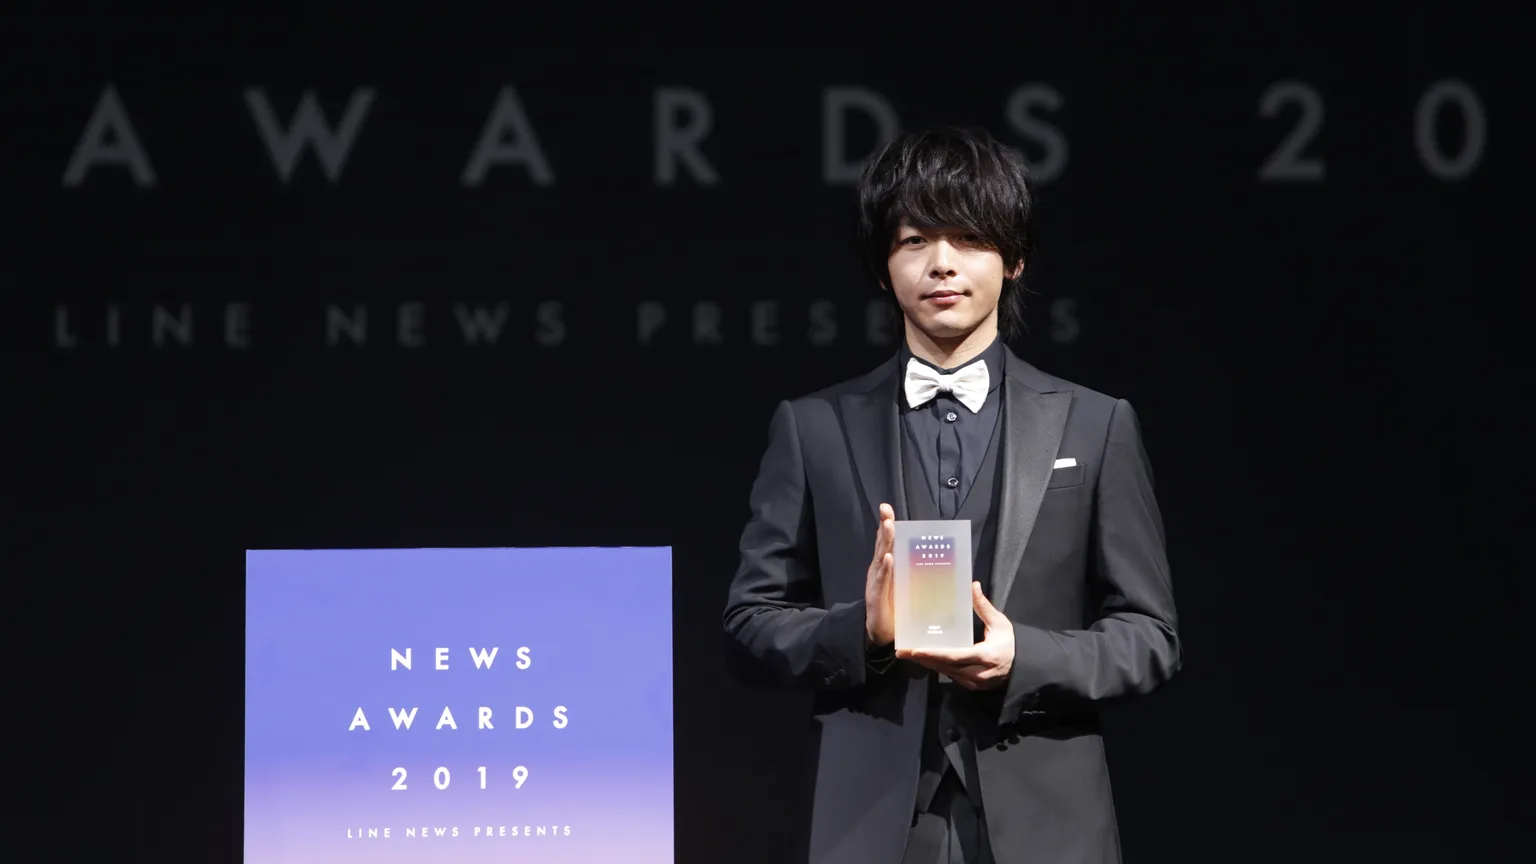 「NEWS AWARDS 2019」を受賞した中村倫也